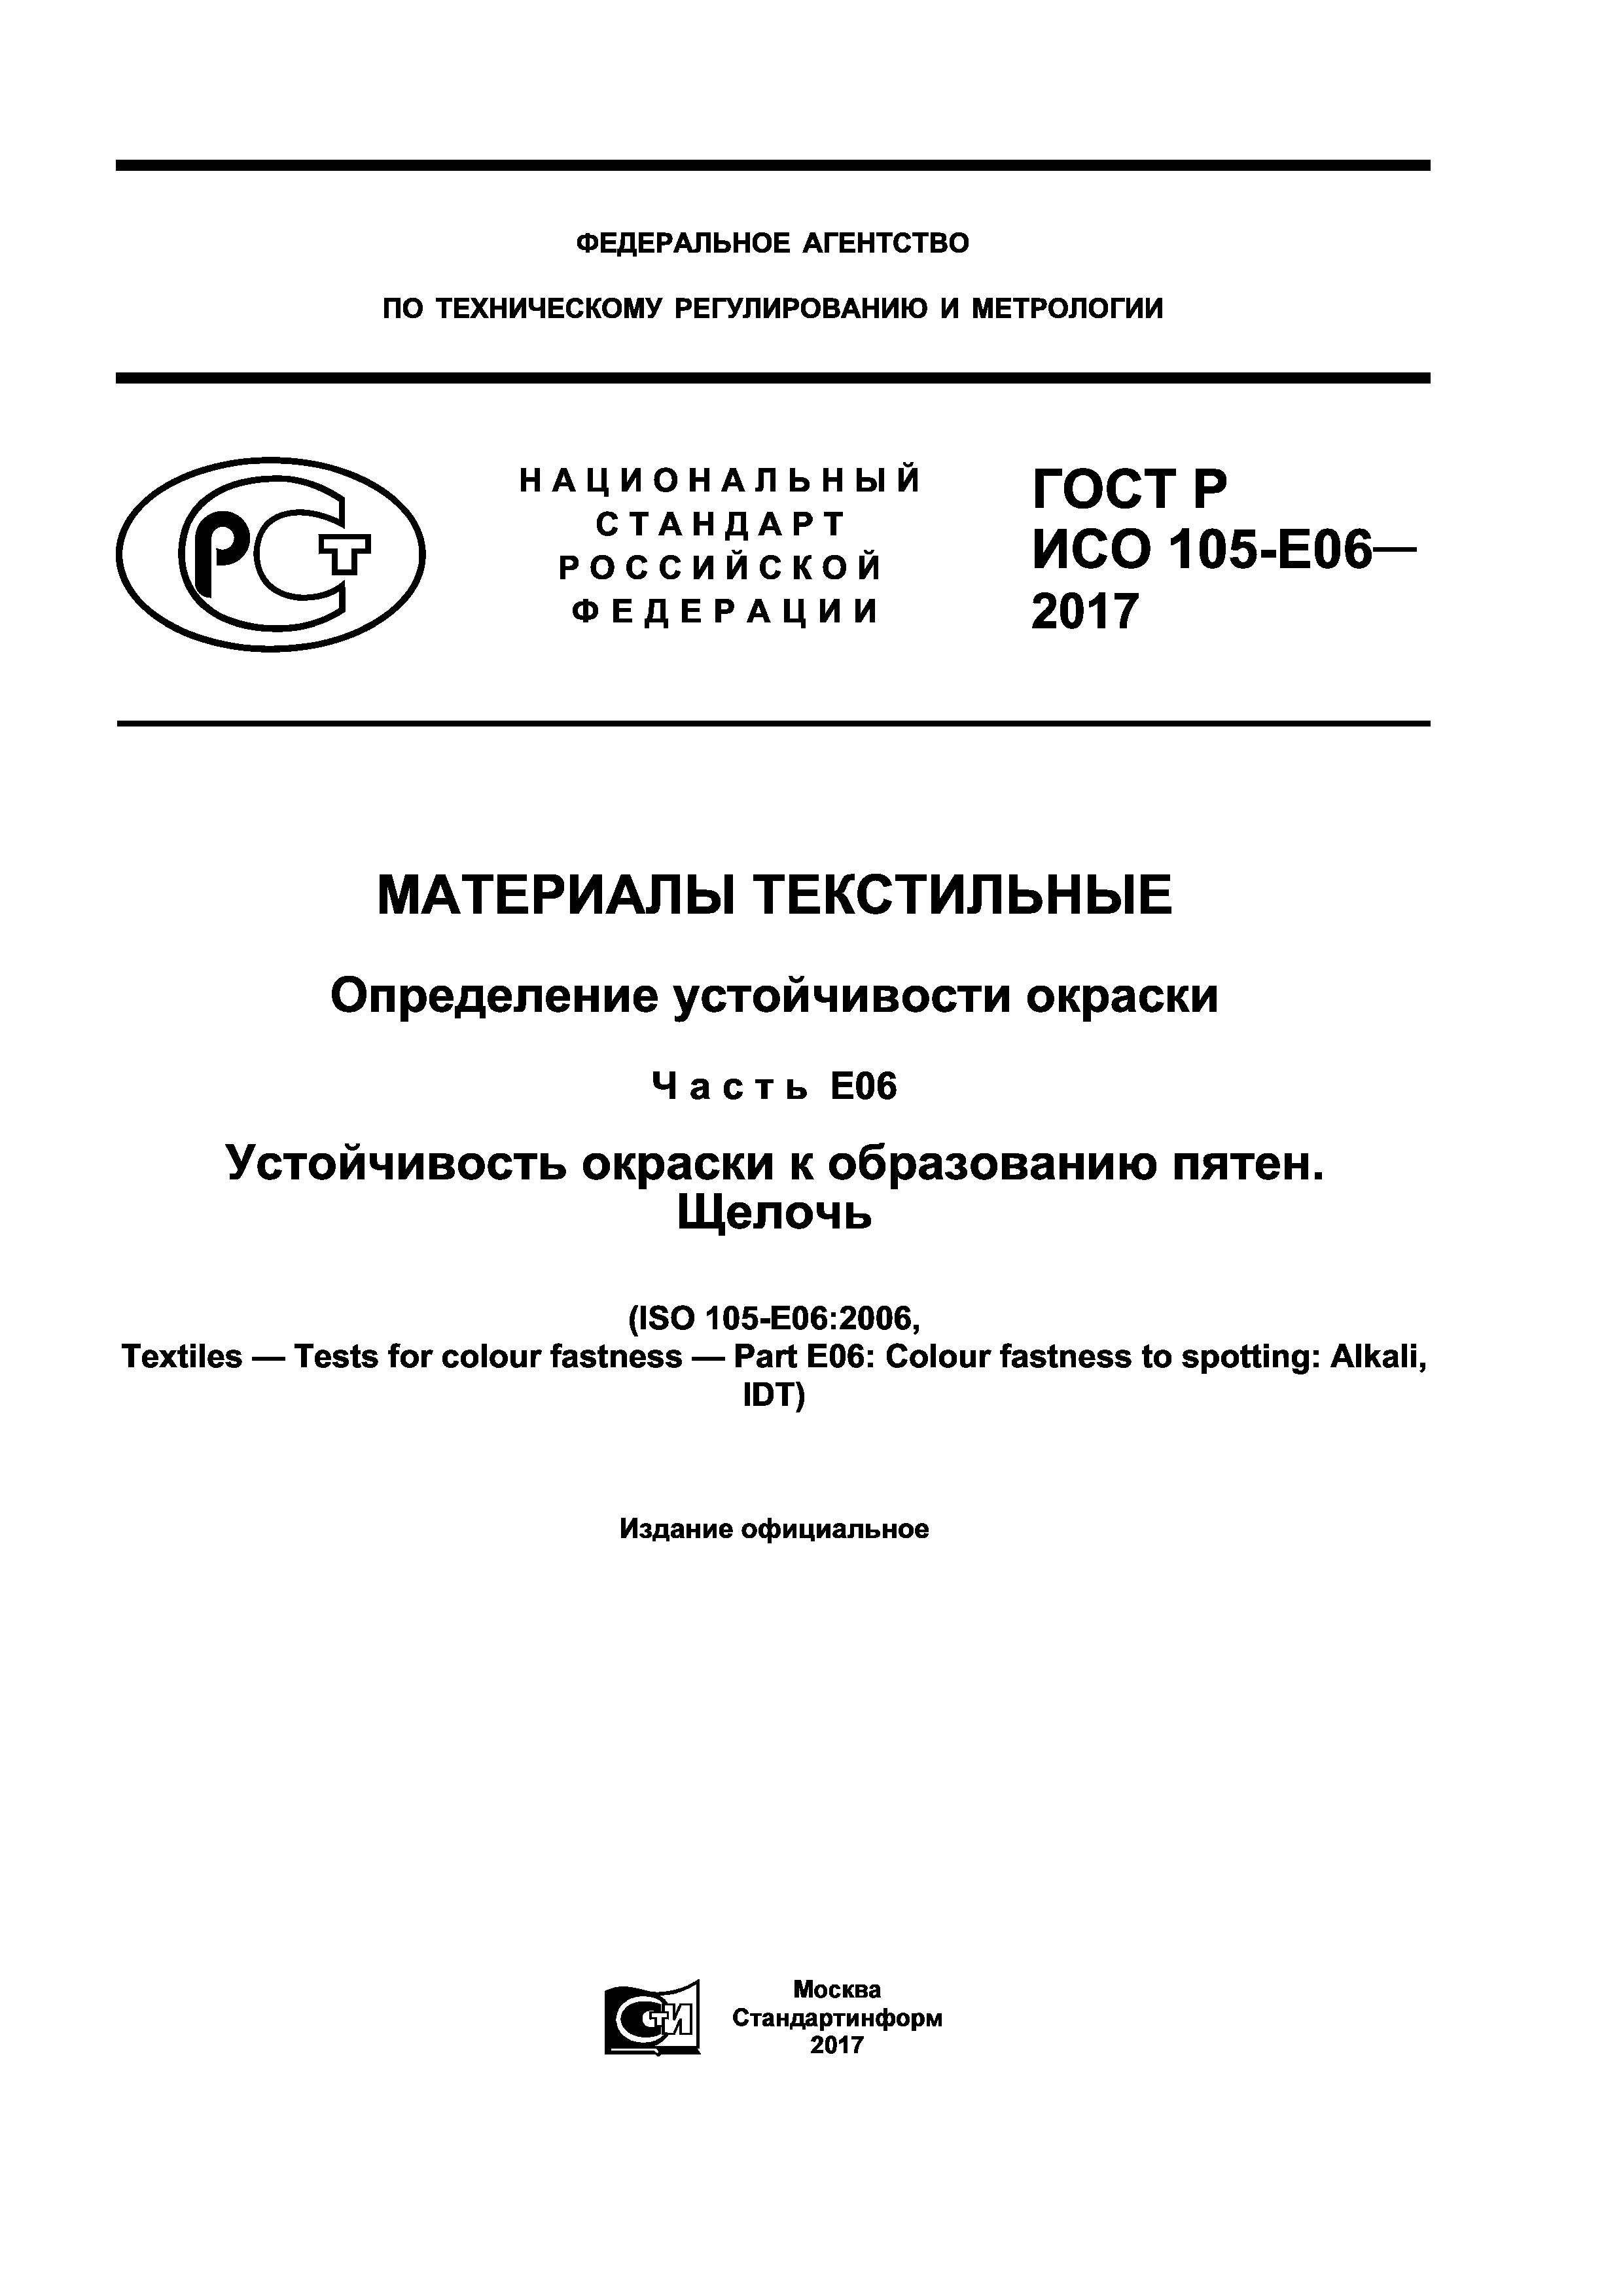 ГОСТ Р ИСО 105-E06-2017